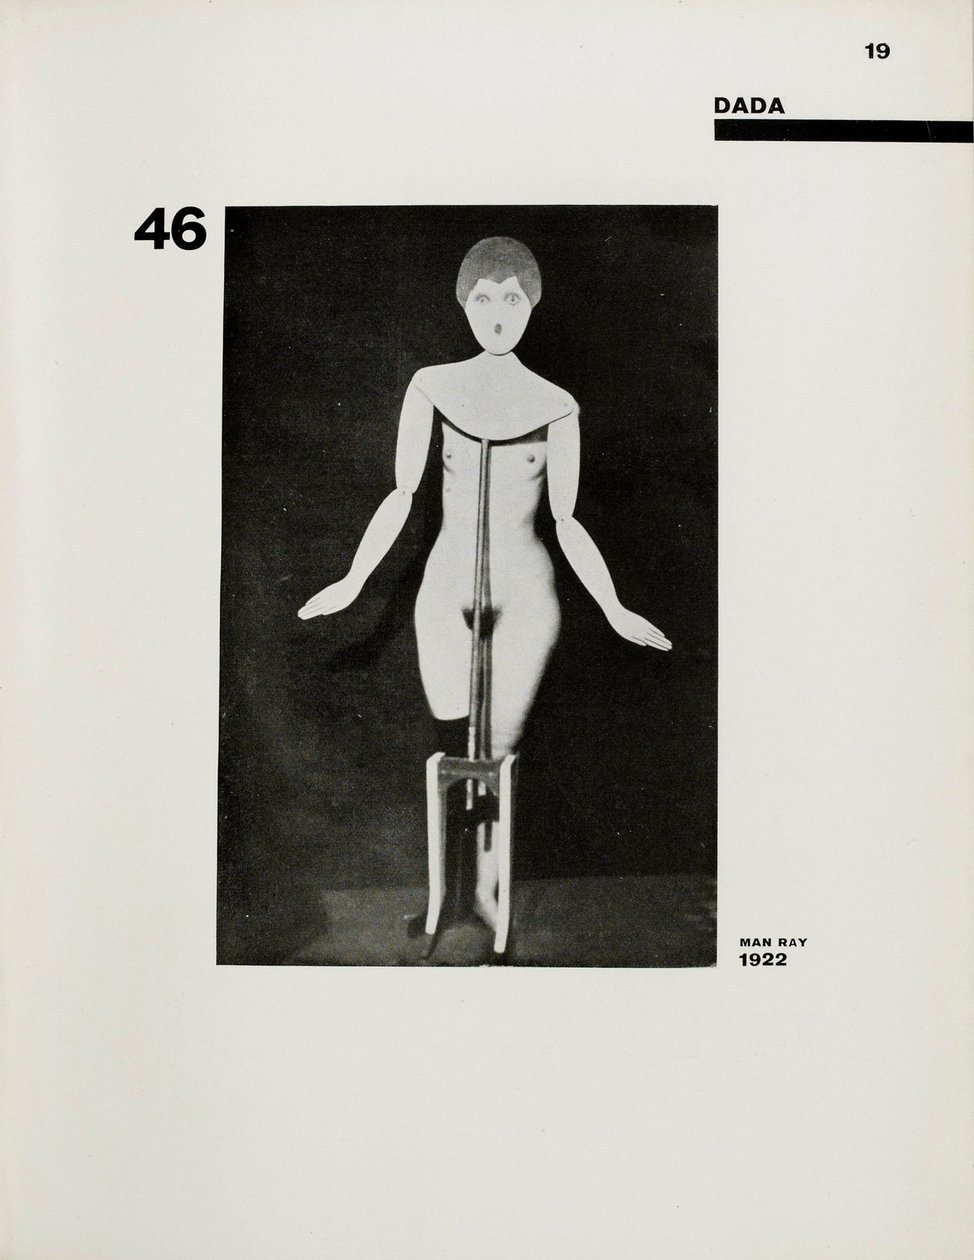 Die Kunstismen. The Isms of Art by El Lissitzky und Hans Arp, 1925. von Eliezer Markowich Lissitzky (fotografiert von Man Ray)